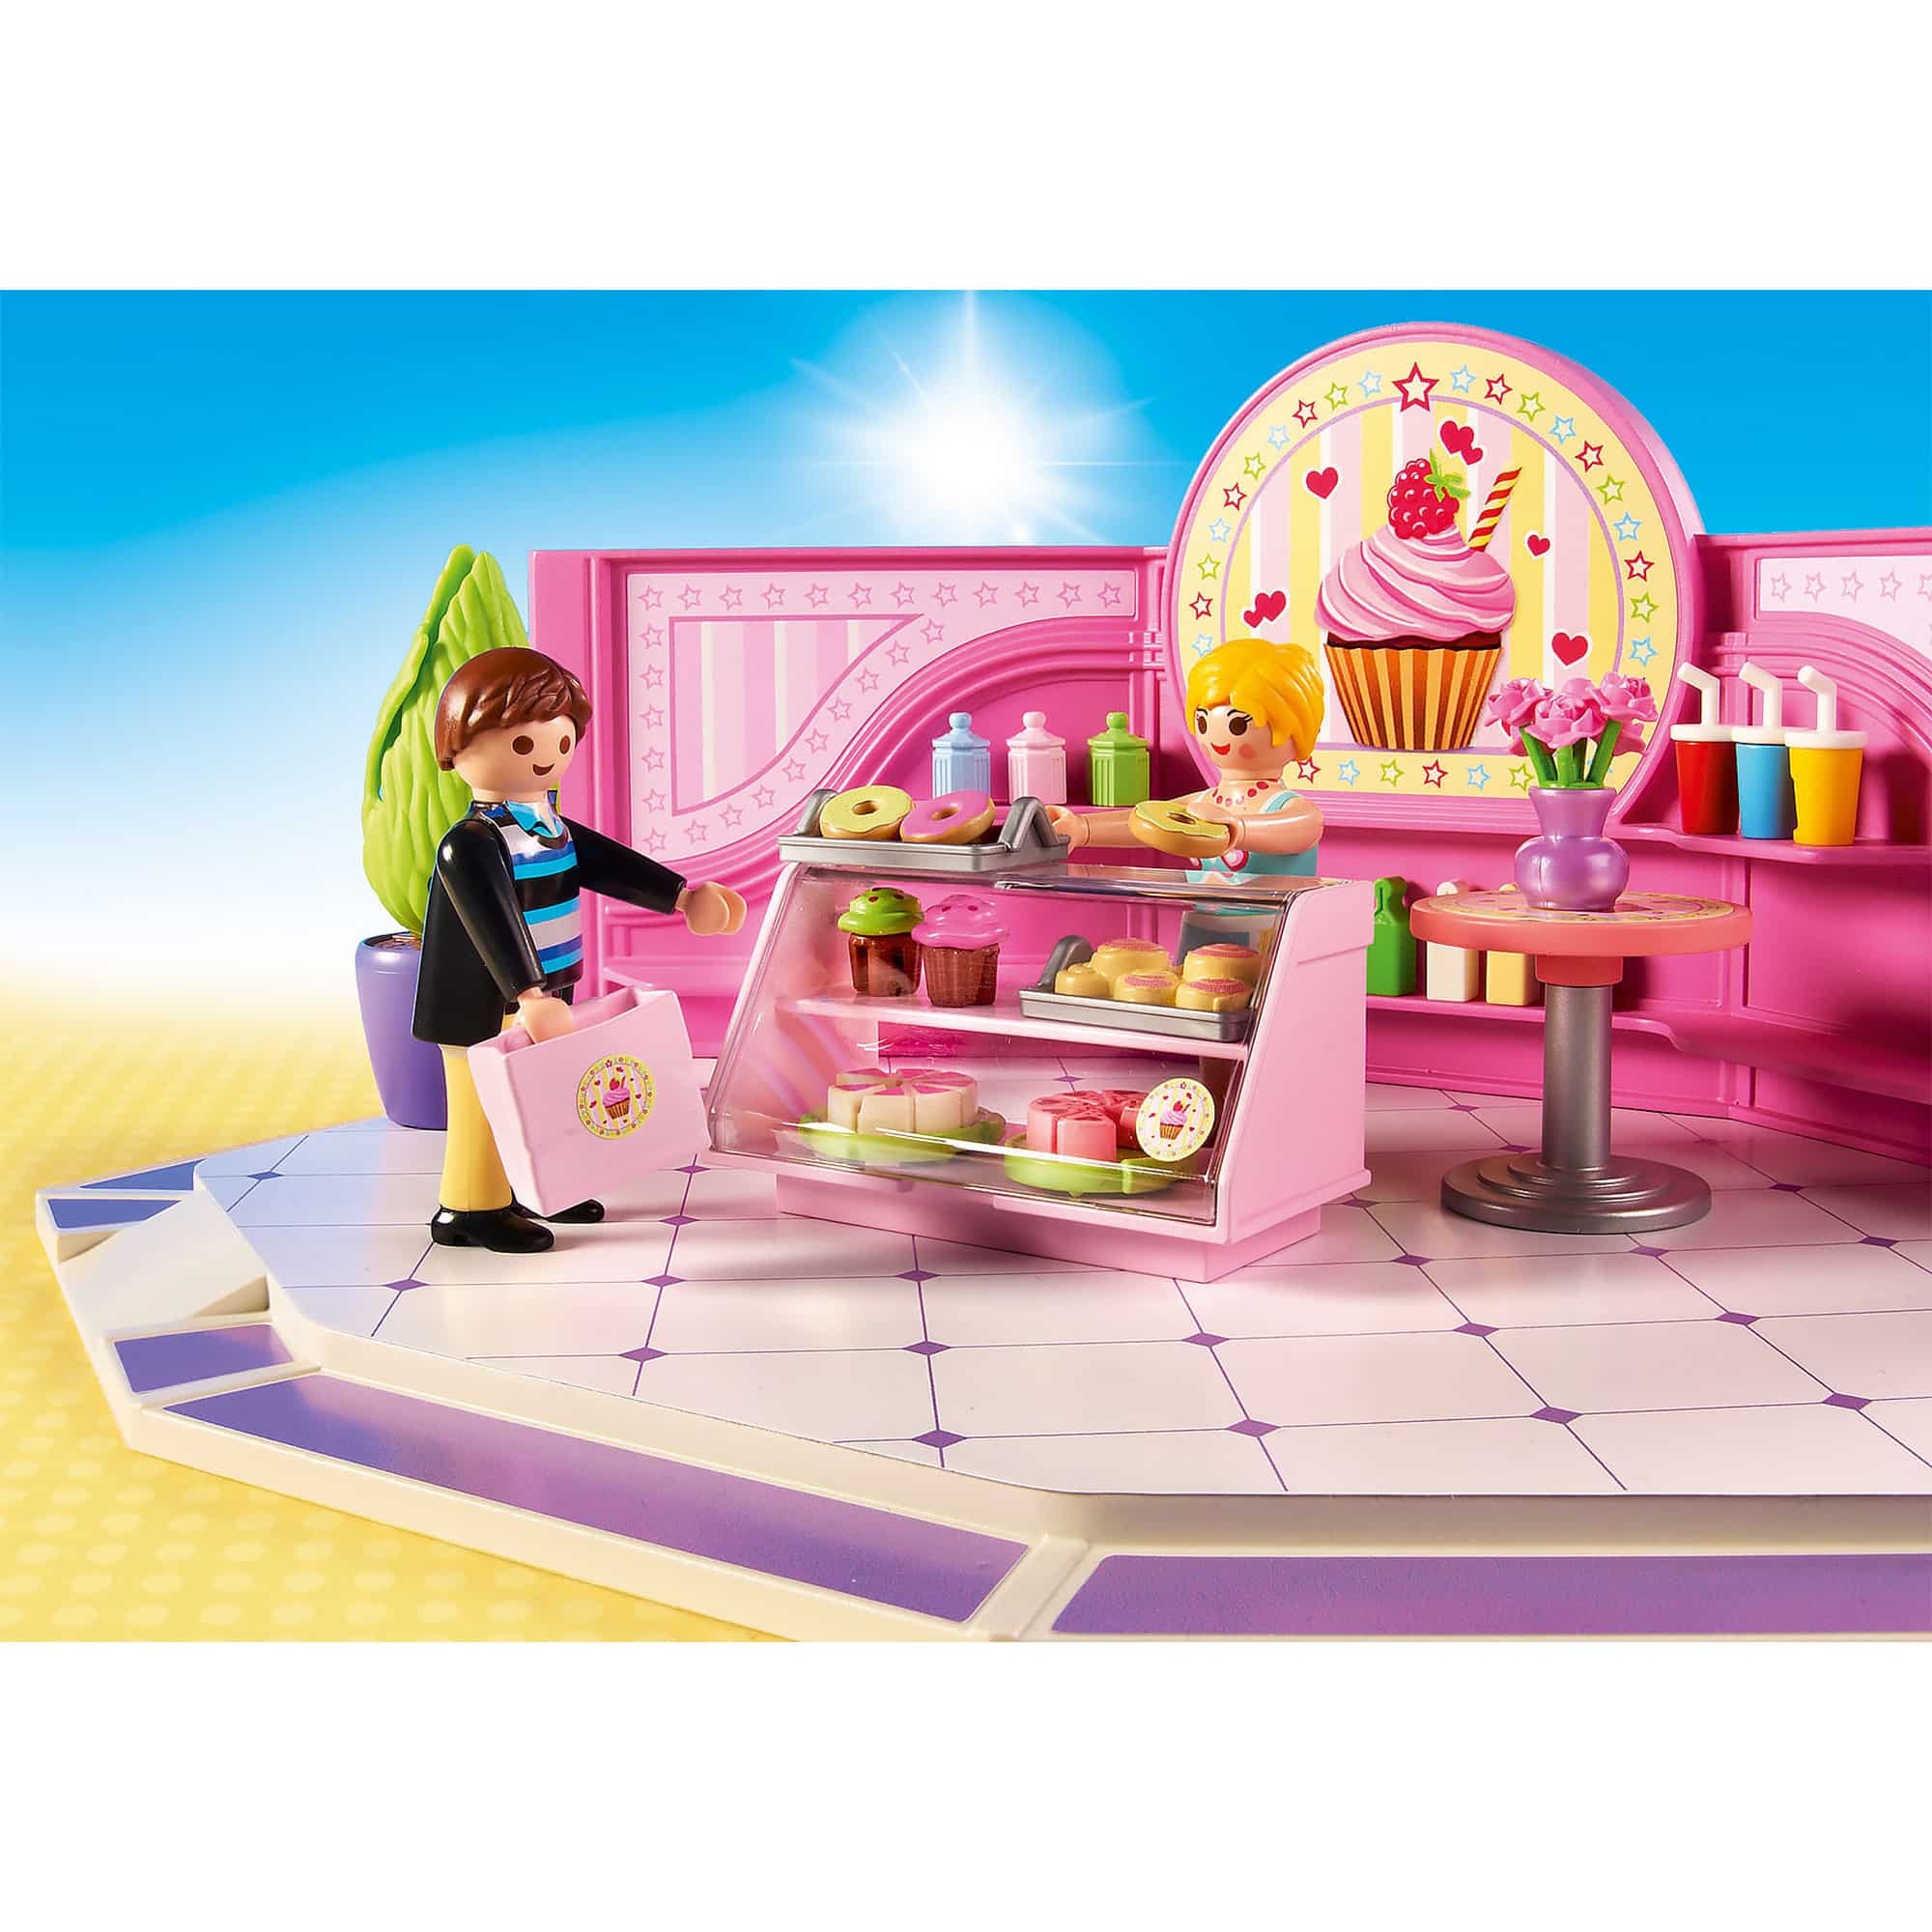 Playmobil - City Life - Cupcake Shop 9080